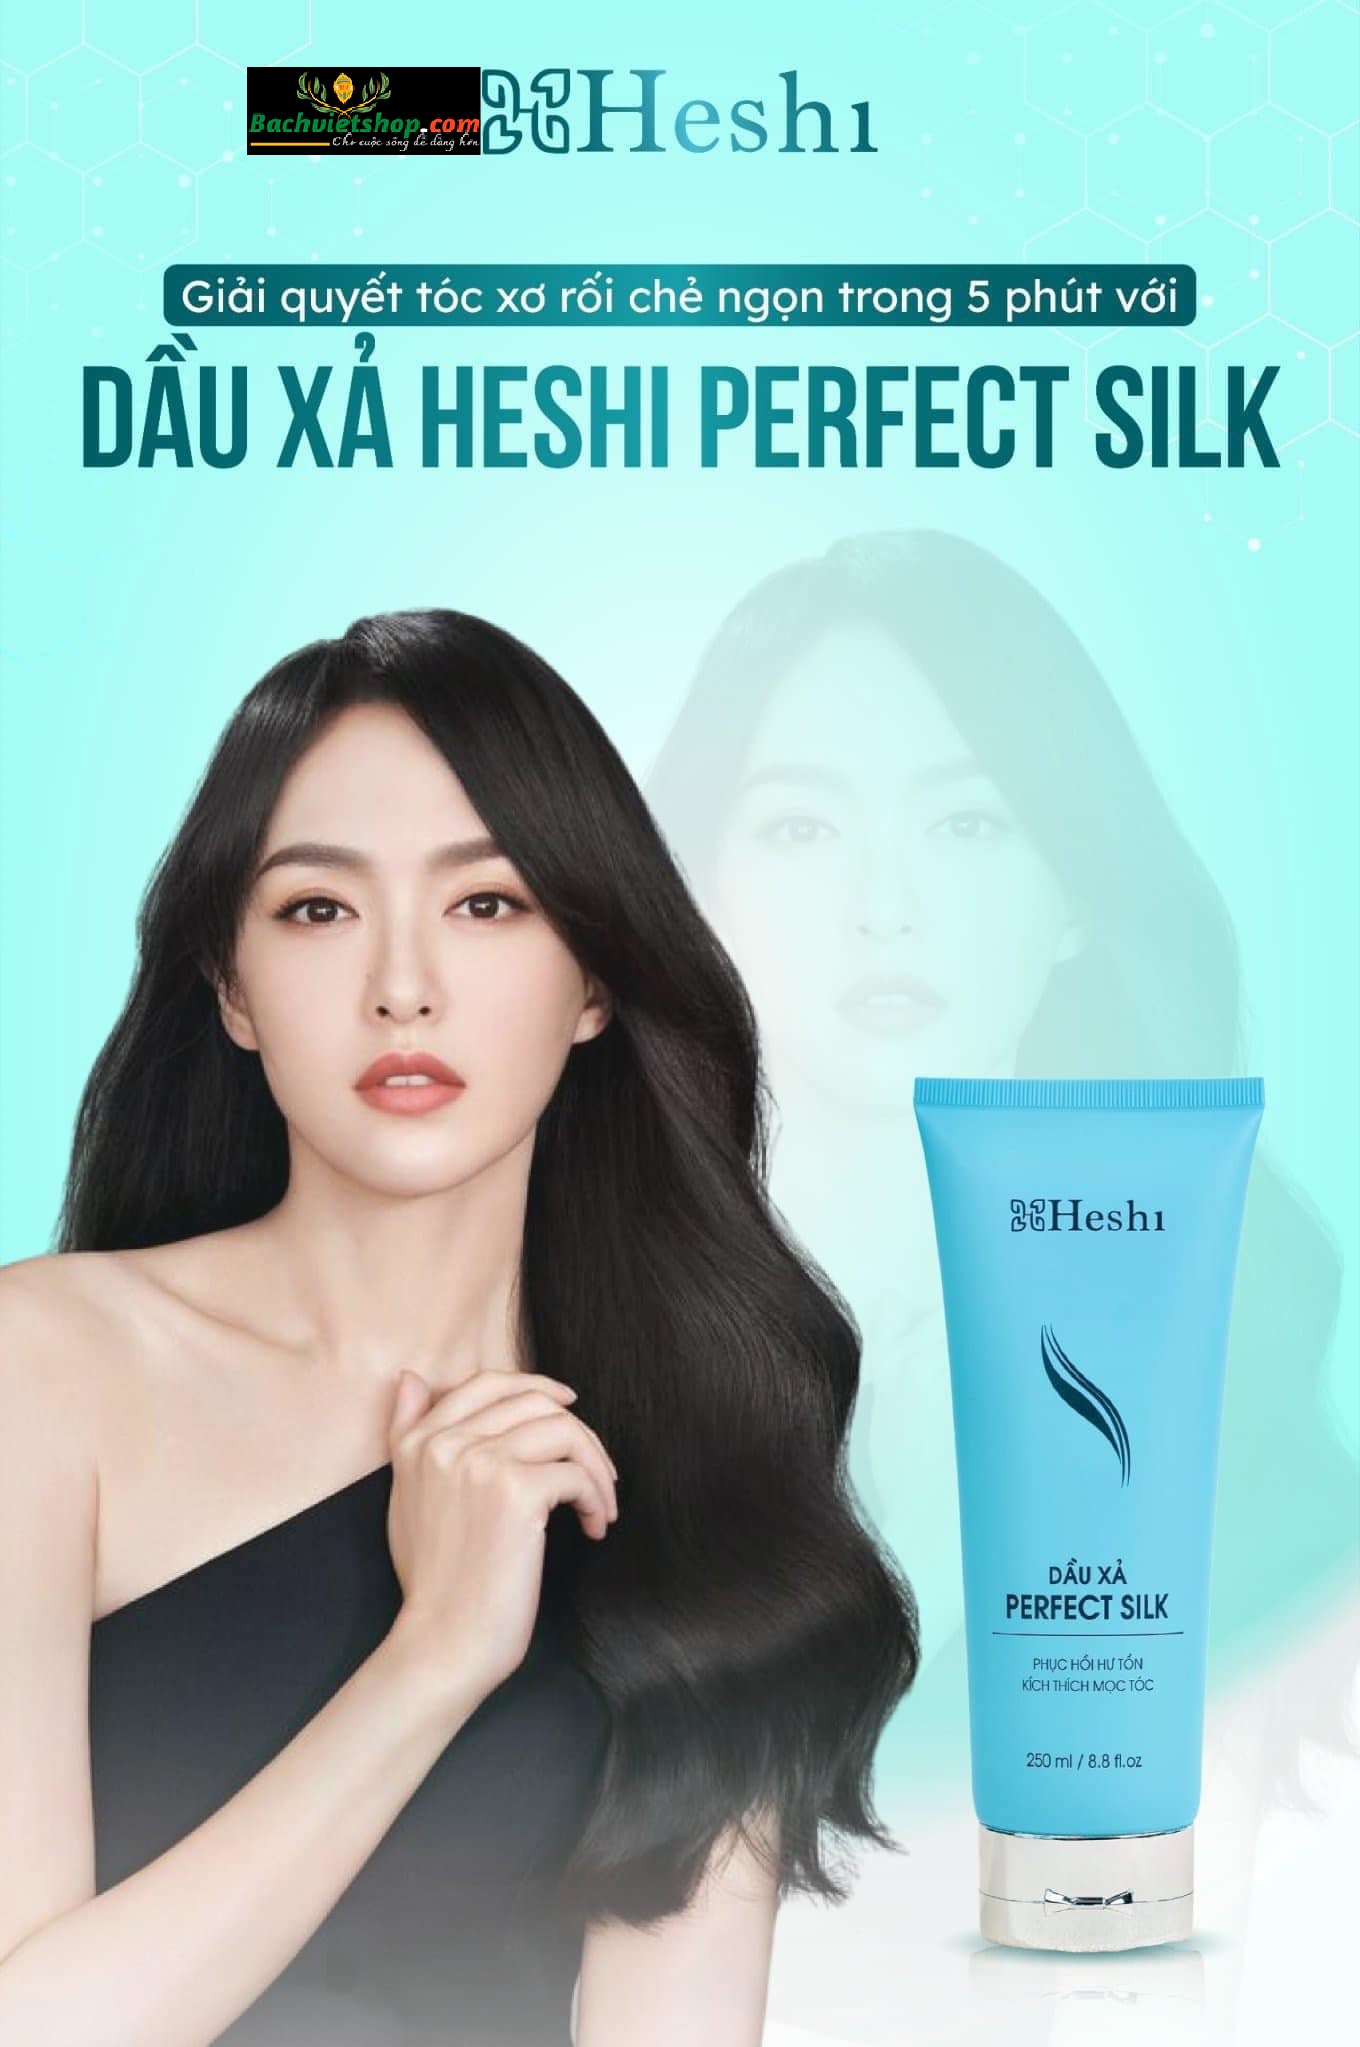 Dầu Xả Heshi Perfect Silk - Giải quyết tóc xơ rối chẻ ngọn chỉ trong 5 phút!